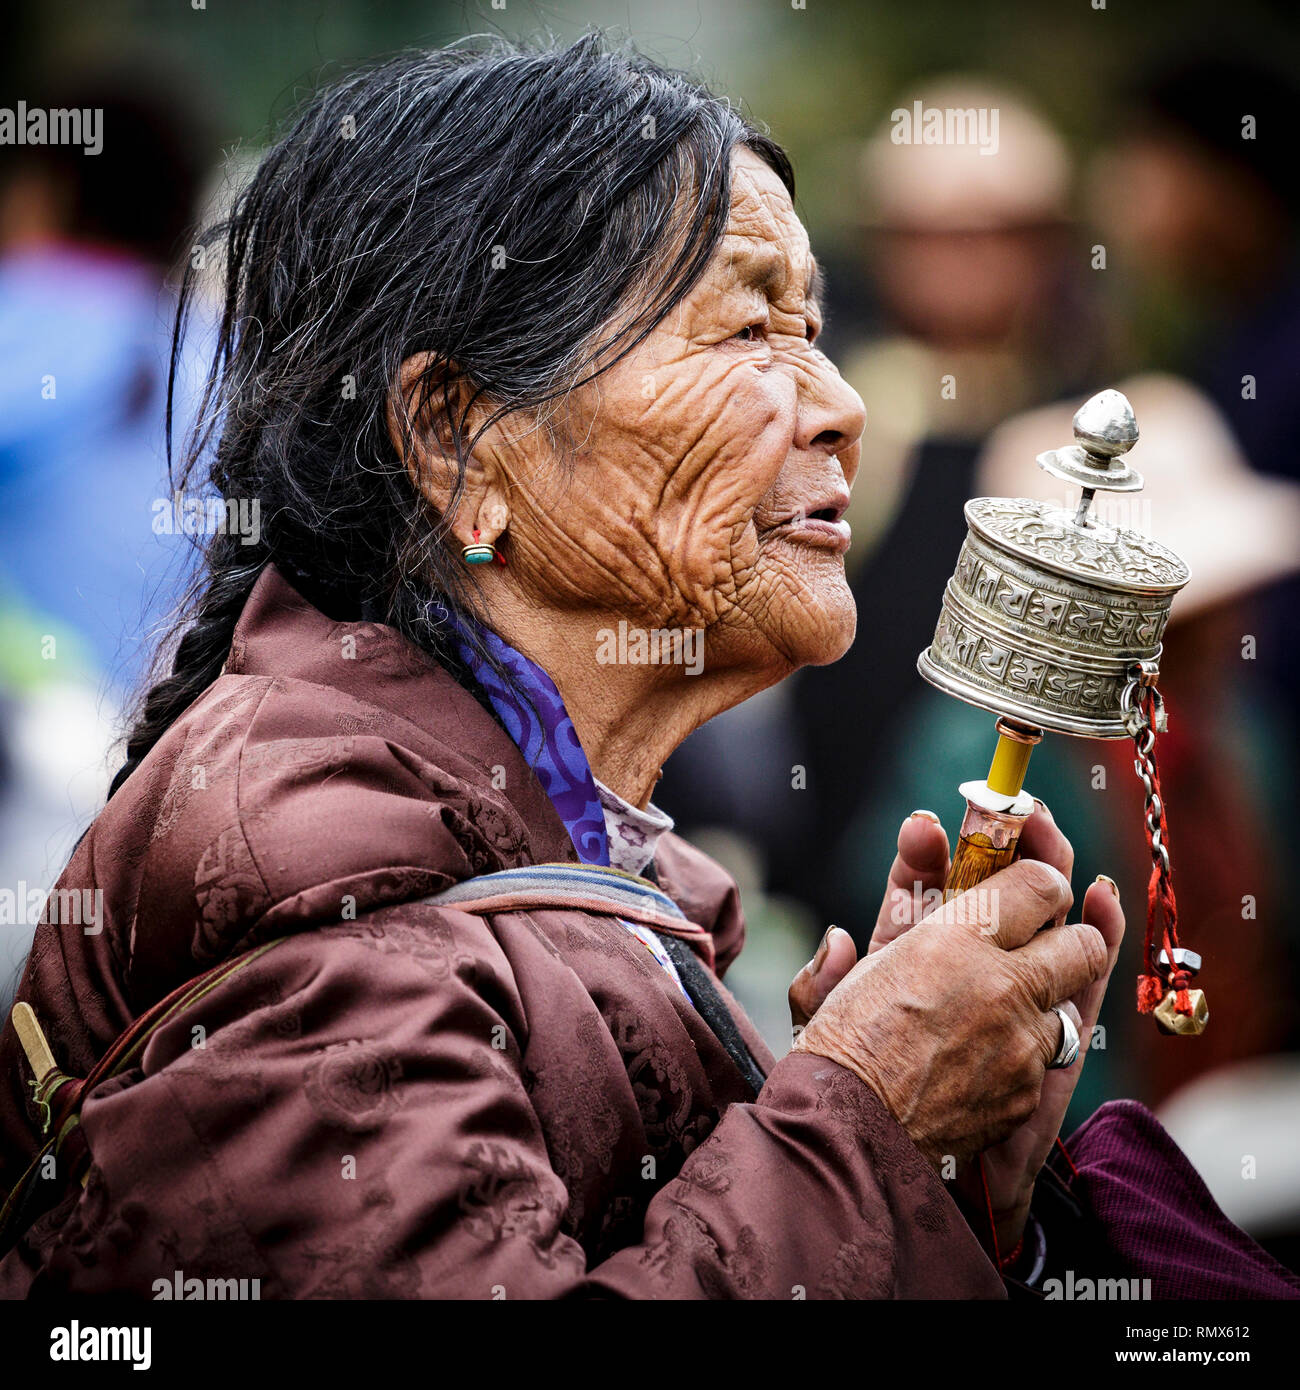 Lhassa, Tibet. 20 juillet 2016. Close-up portrait d'une femme portant des vêtements traditionnels ethniques en priant avec un terminal mobile à prières. Photo : Bryan Wa Banque D'Images